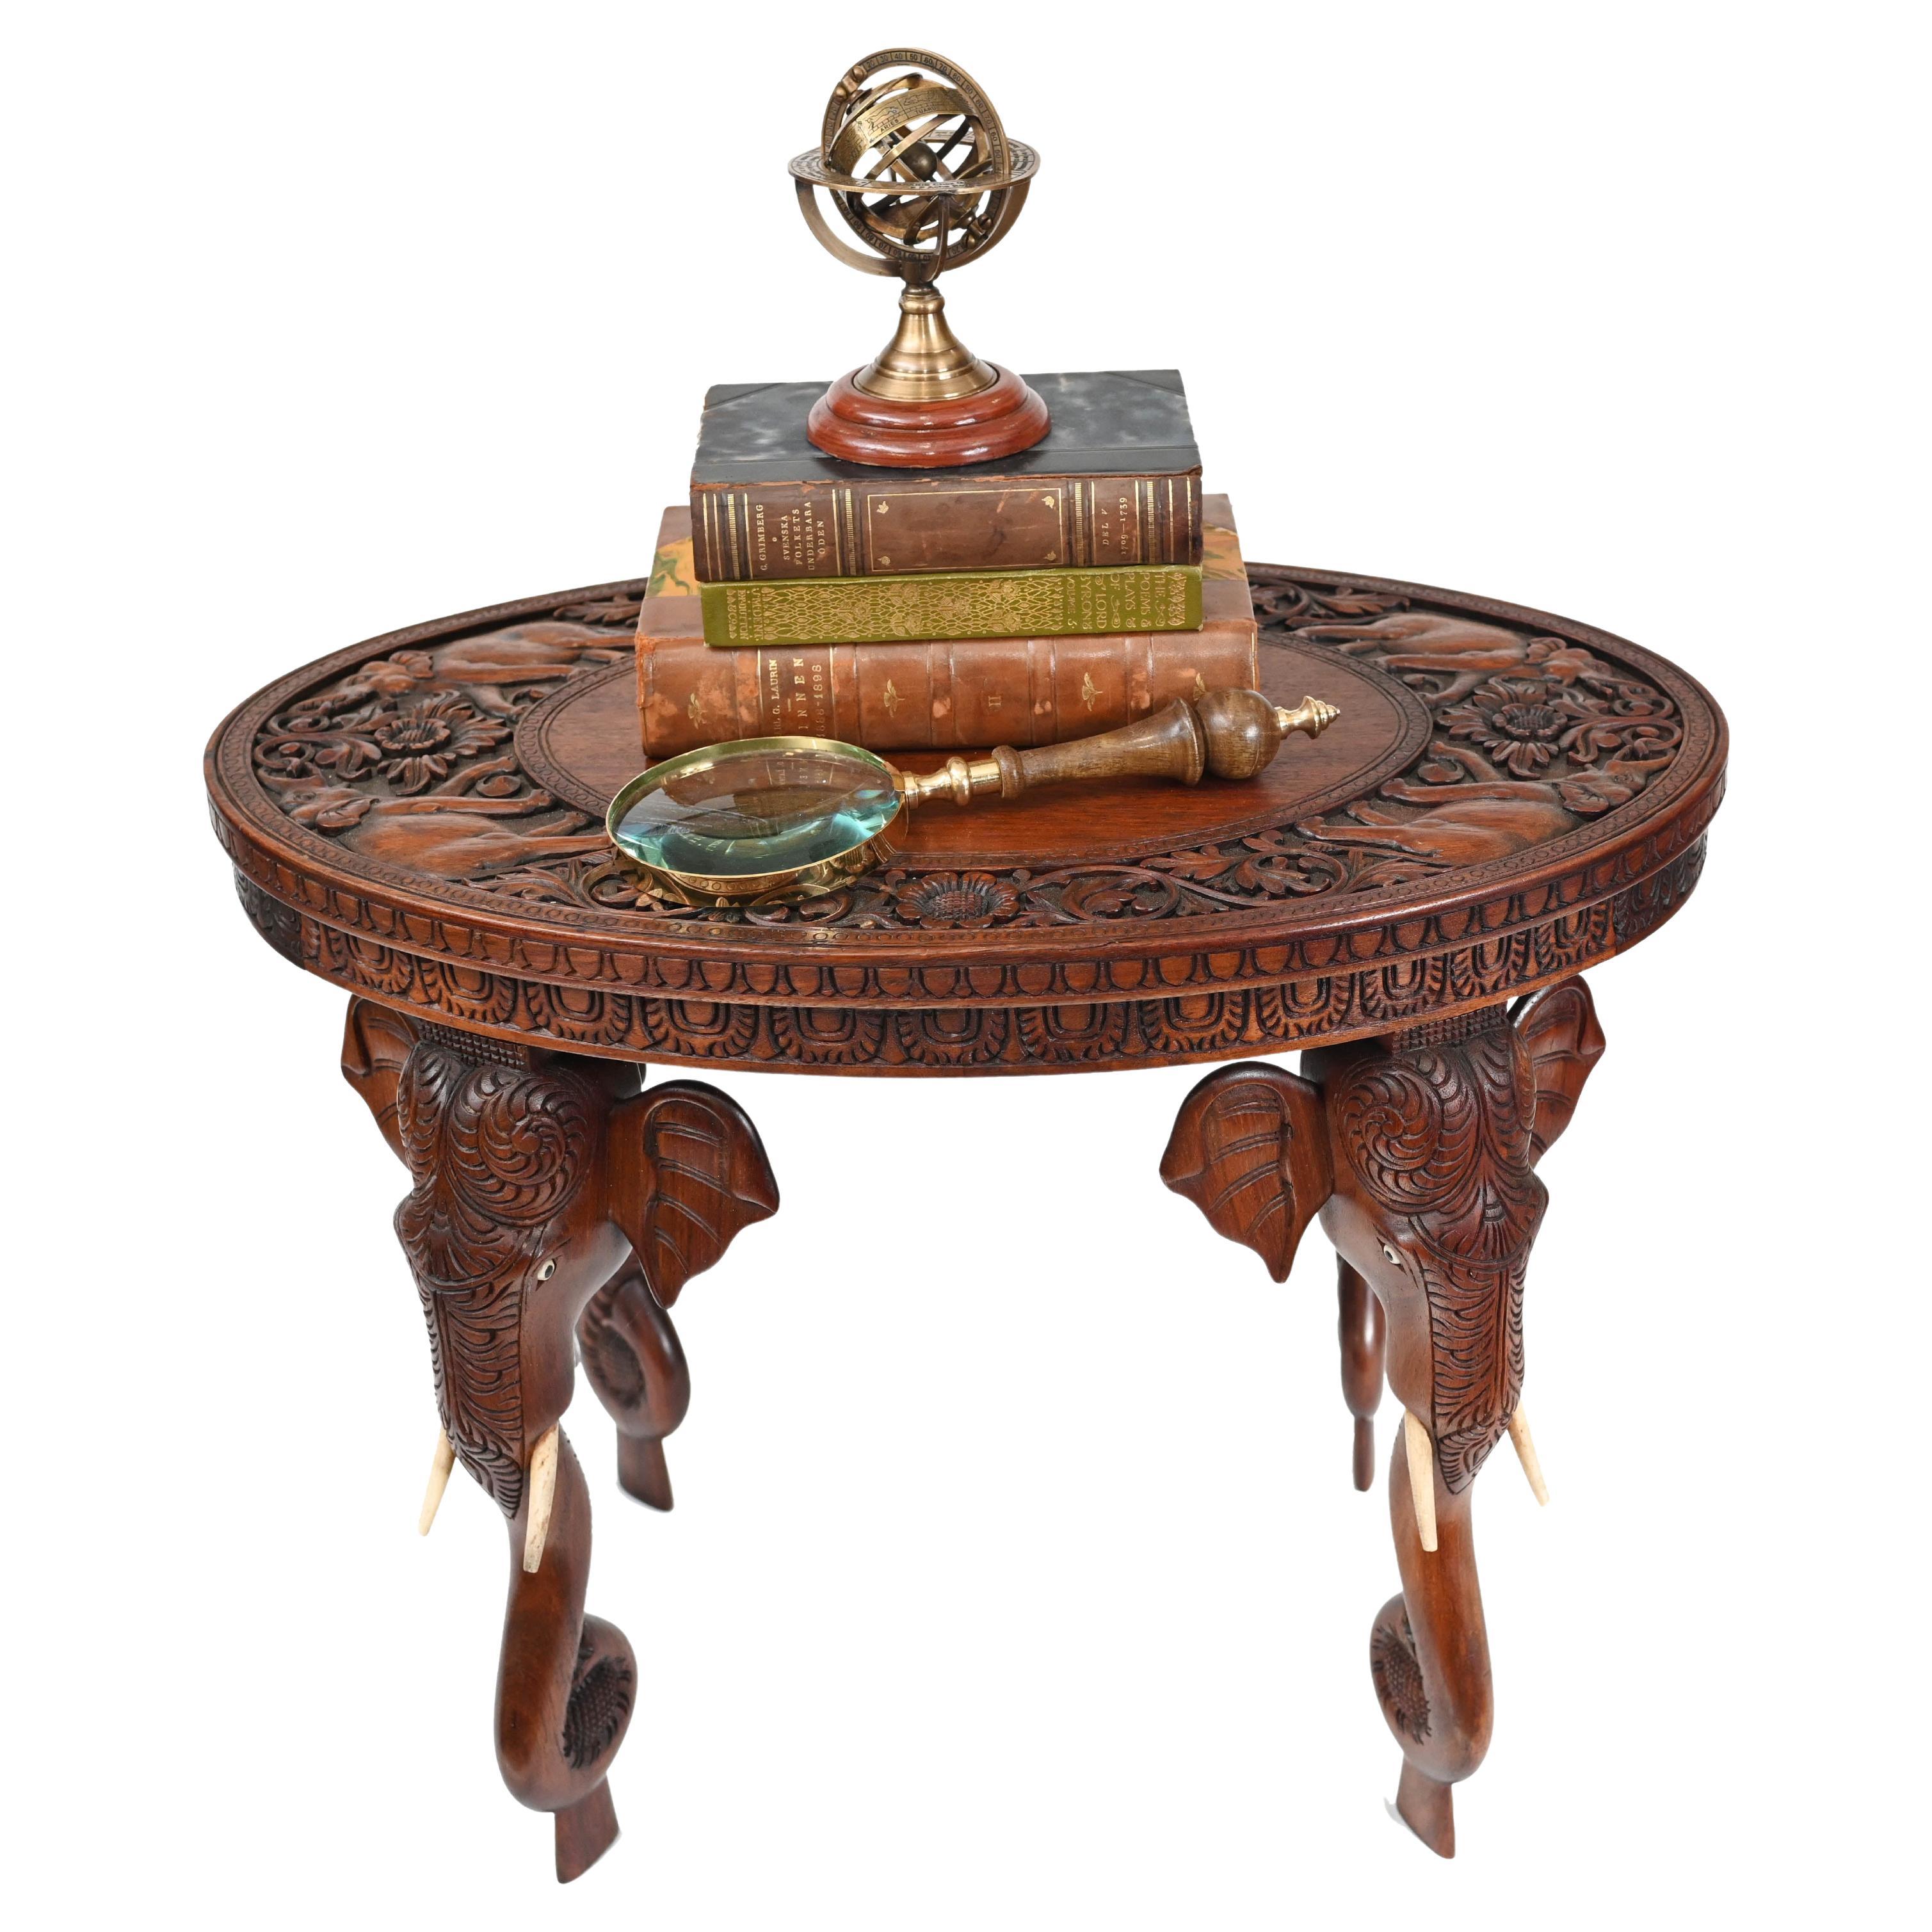 Table d'appoint birmane sculptée pieds d'éléphants, meubles anciens de Birmanie